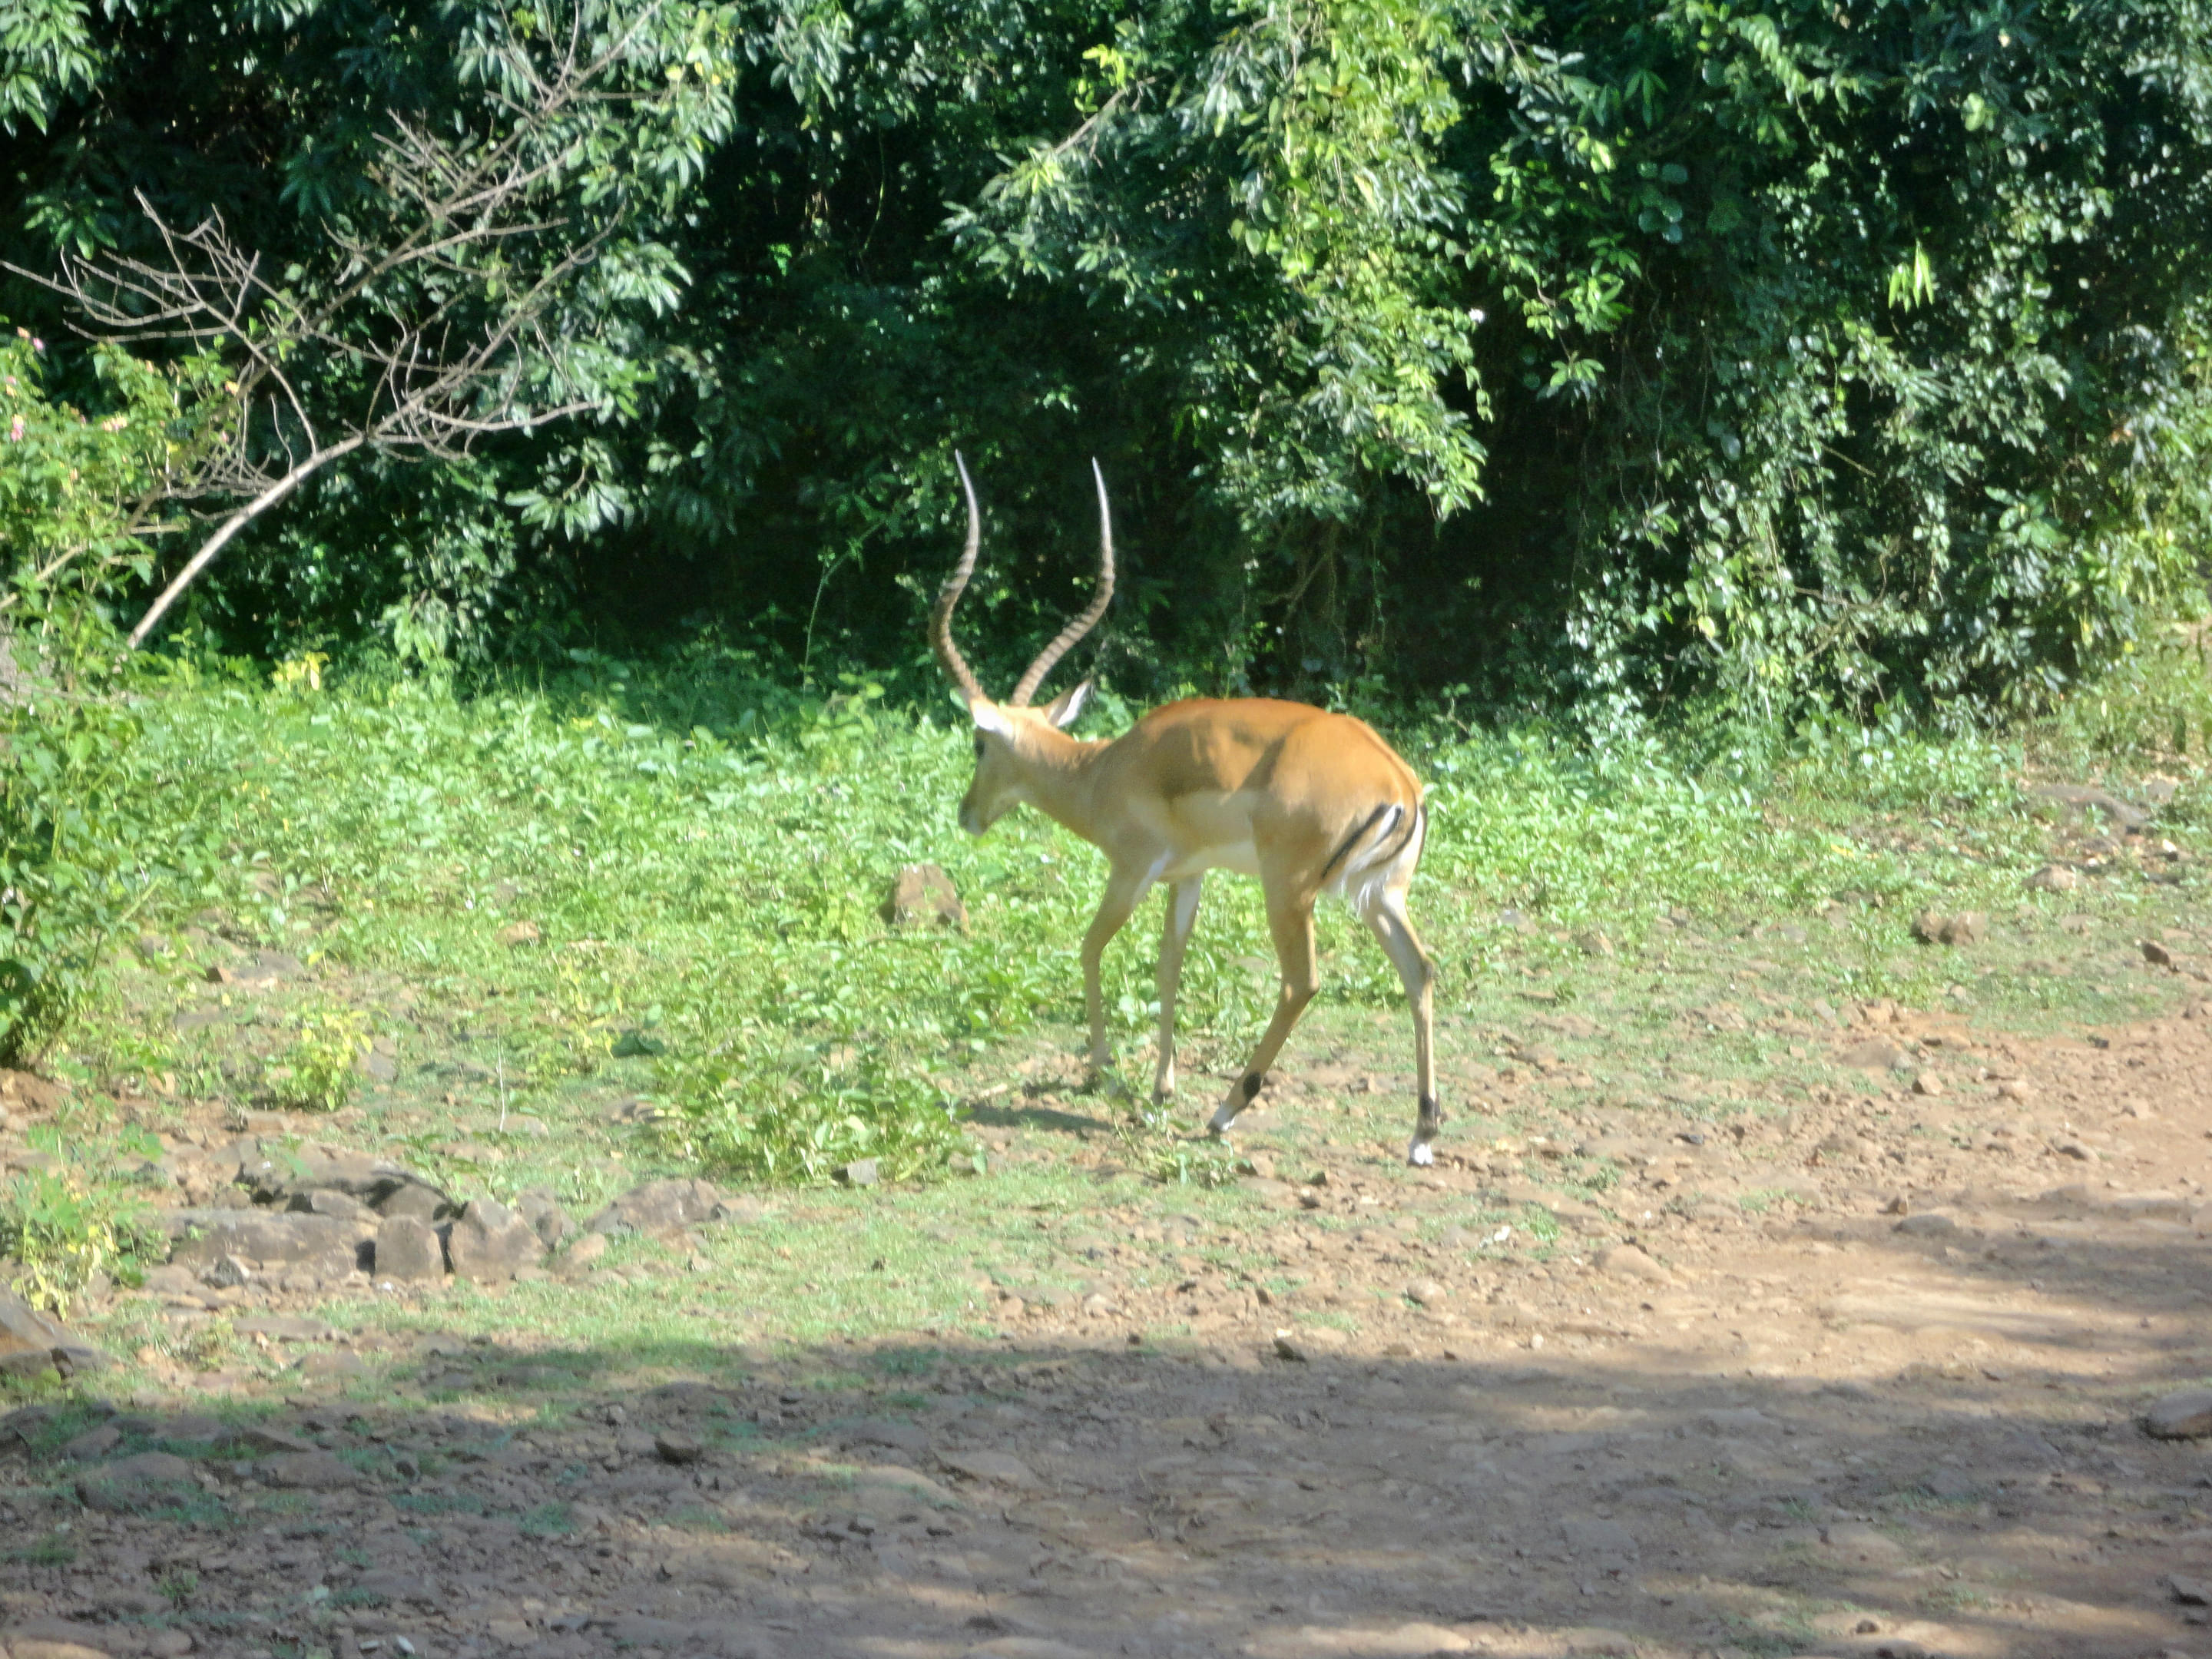 Kisumu Impala Sanctuary Overview